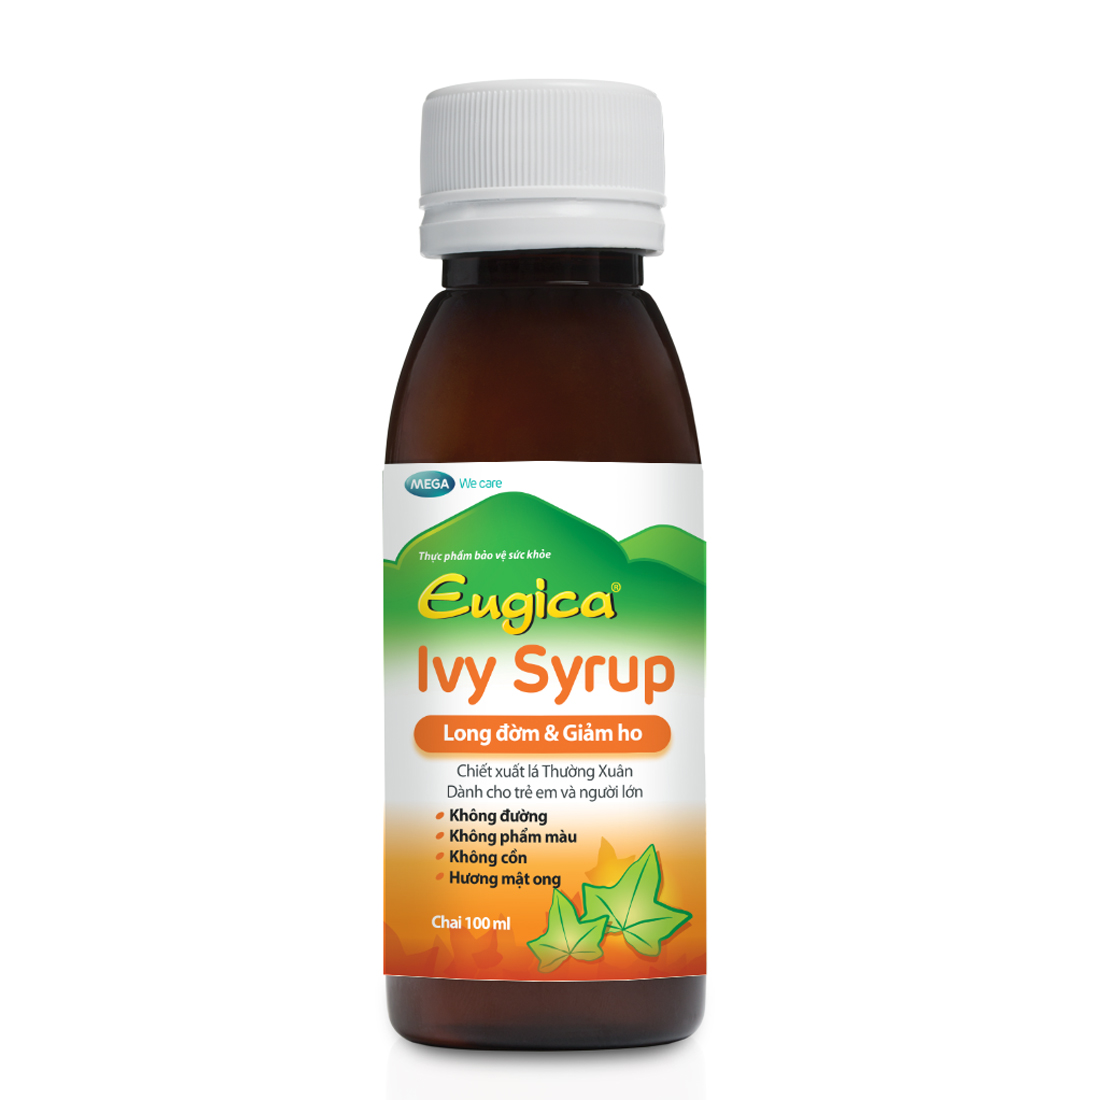 Siro Eugica Ivy Syrup giúp hỗ trợ long đờm, giảm ho (100ml)